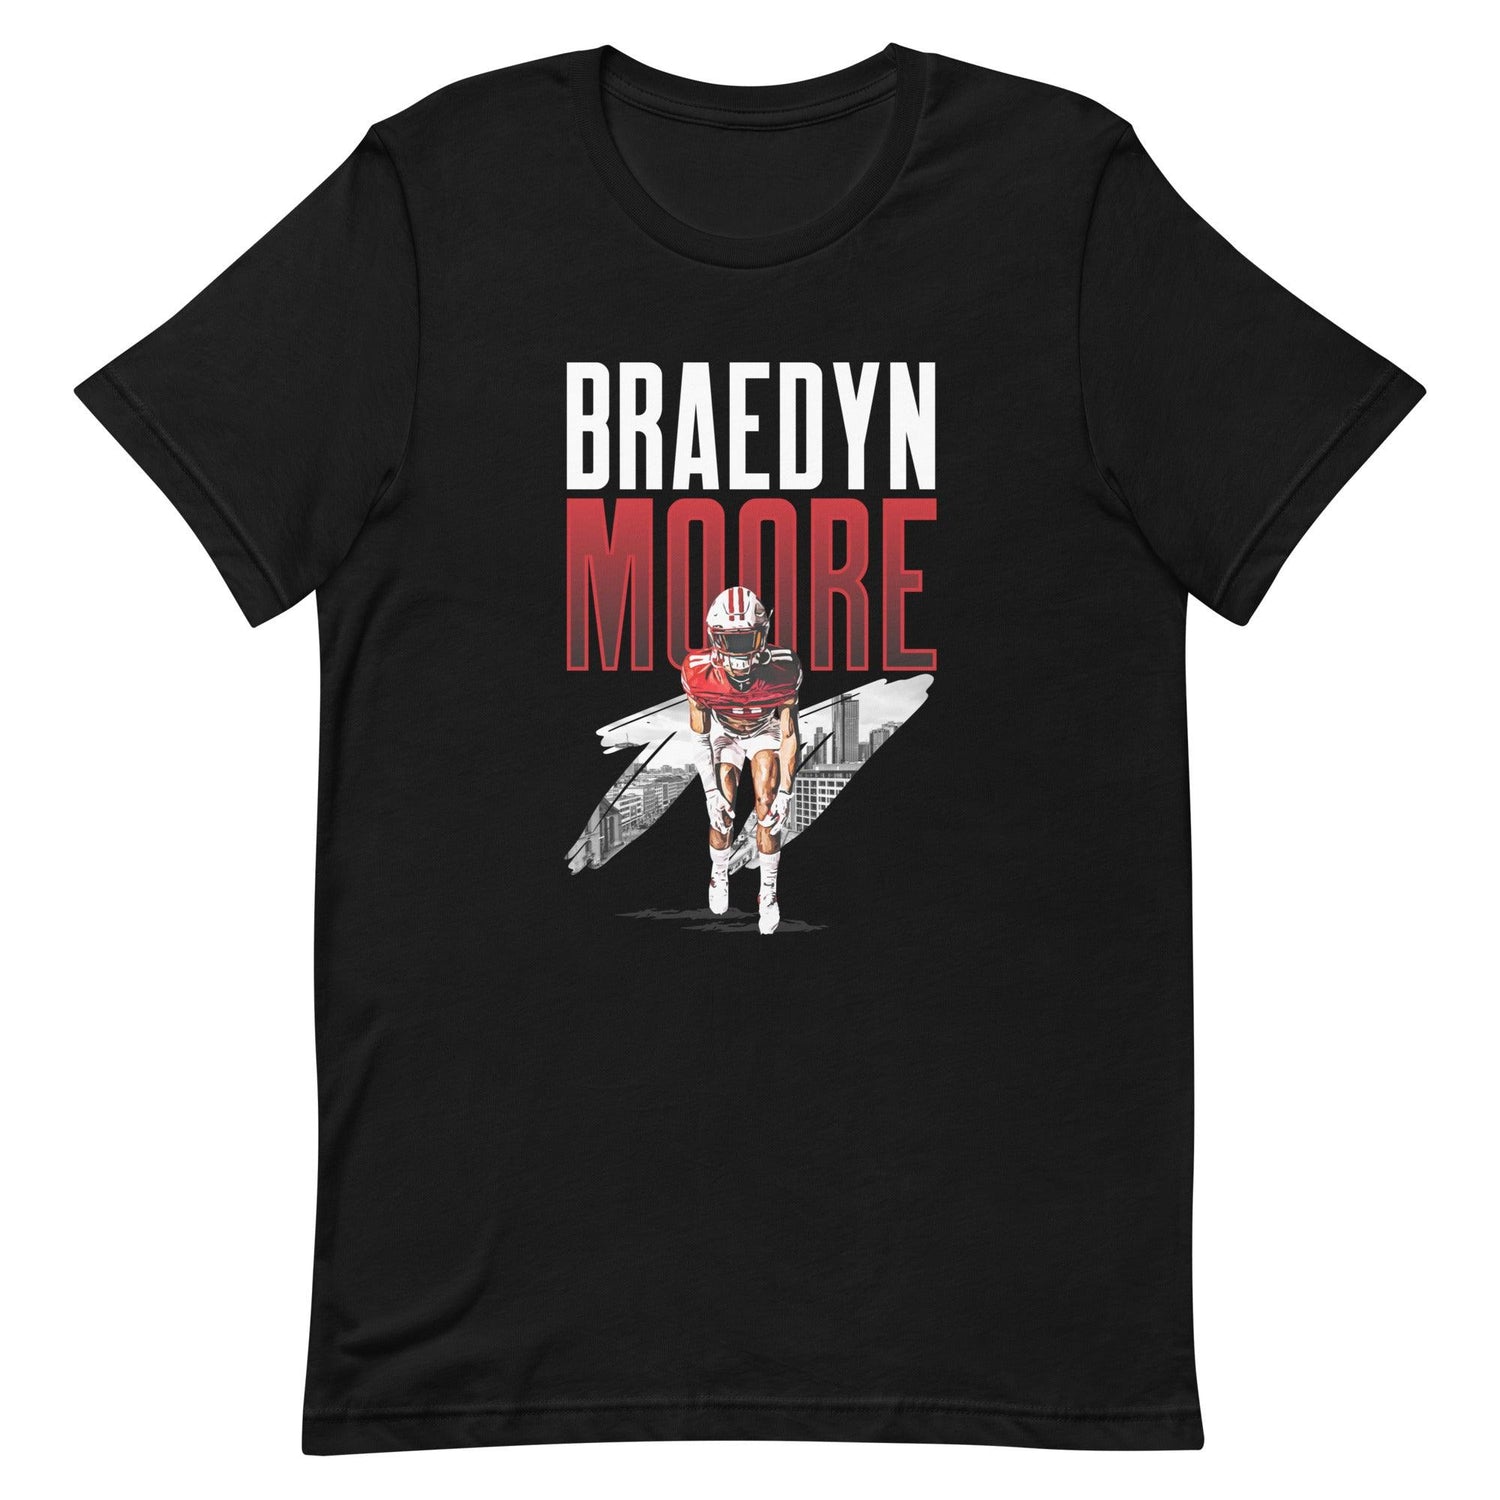 Braedyn Moore "Gameday" t-shirt - Fan Arch